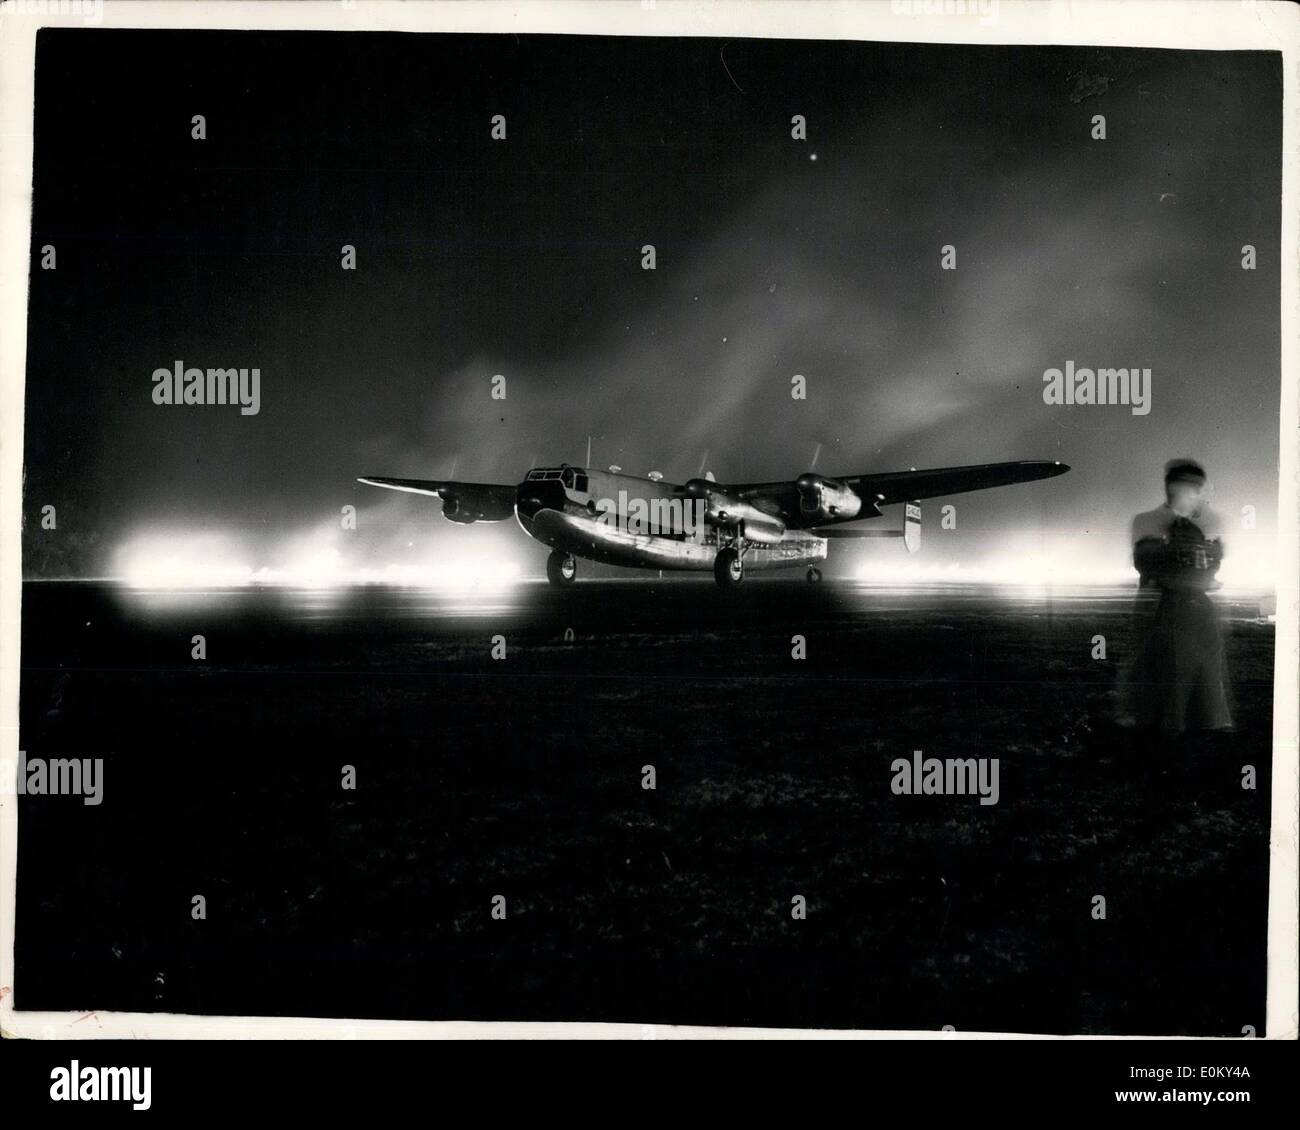 11 novembre 1952 - Test de l'installation d'avions de Fido à Blackbushe Airport : trois avions civils transportant deux rangées de brûler l'essence mélange à Blackbushe Airport,Sondage, aujourd'hui. Le but étant d'évaluer les réactions des passagers et pilote à Fido et non pas pour prouver les capacités de compensation, c'est du brouillard qui sont déjà connus. Photo montre une B.O.A.C, l'avion de New York se prépare à décoller alors que les brûleurs sont en opération à l'aéroport Blackbushe ce soir. Banque D'Images